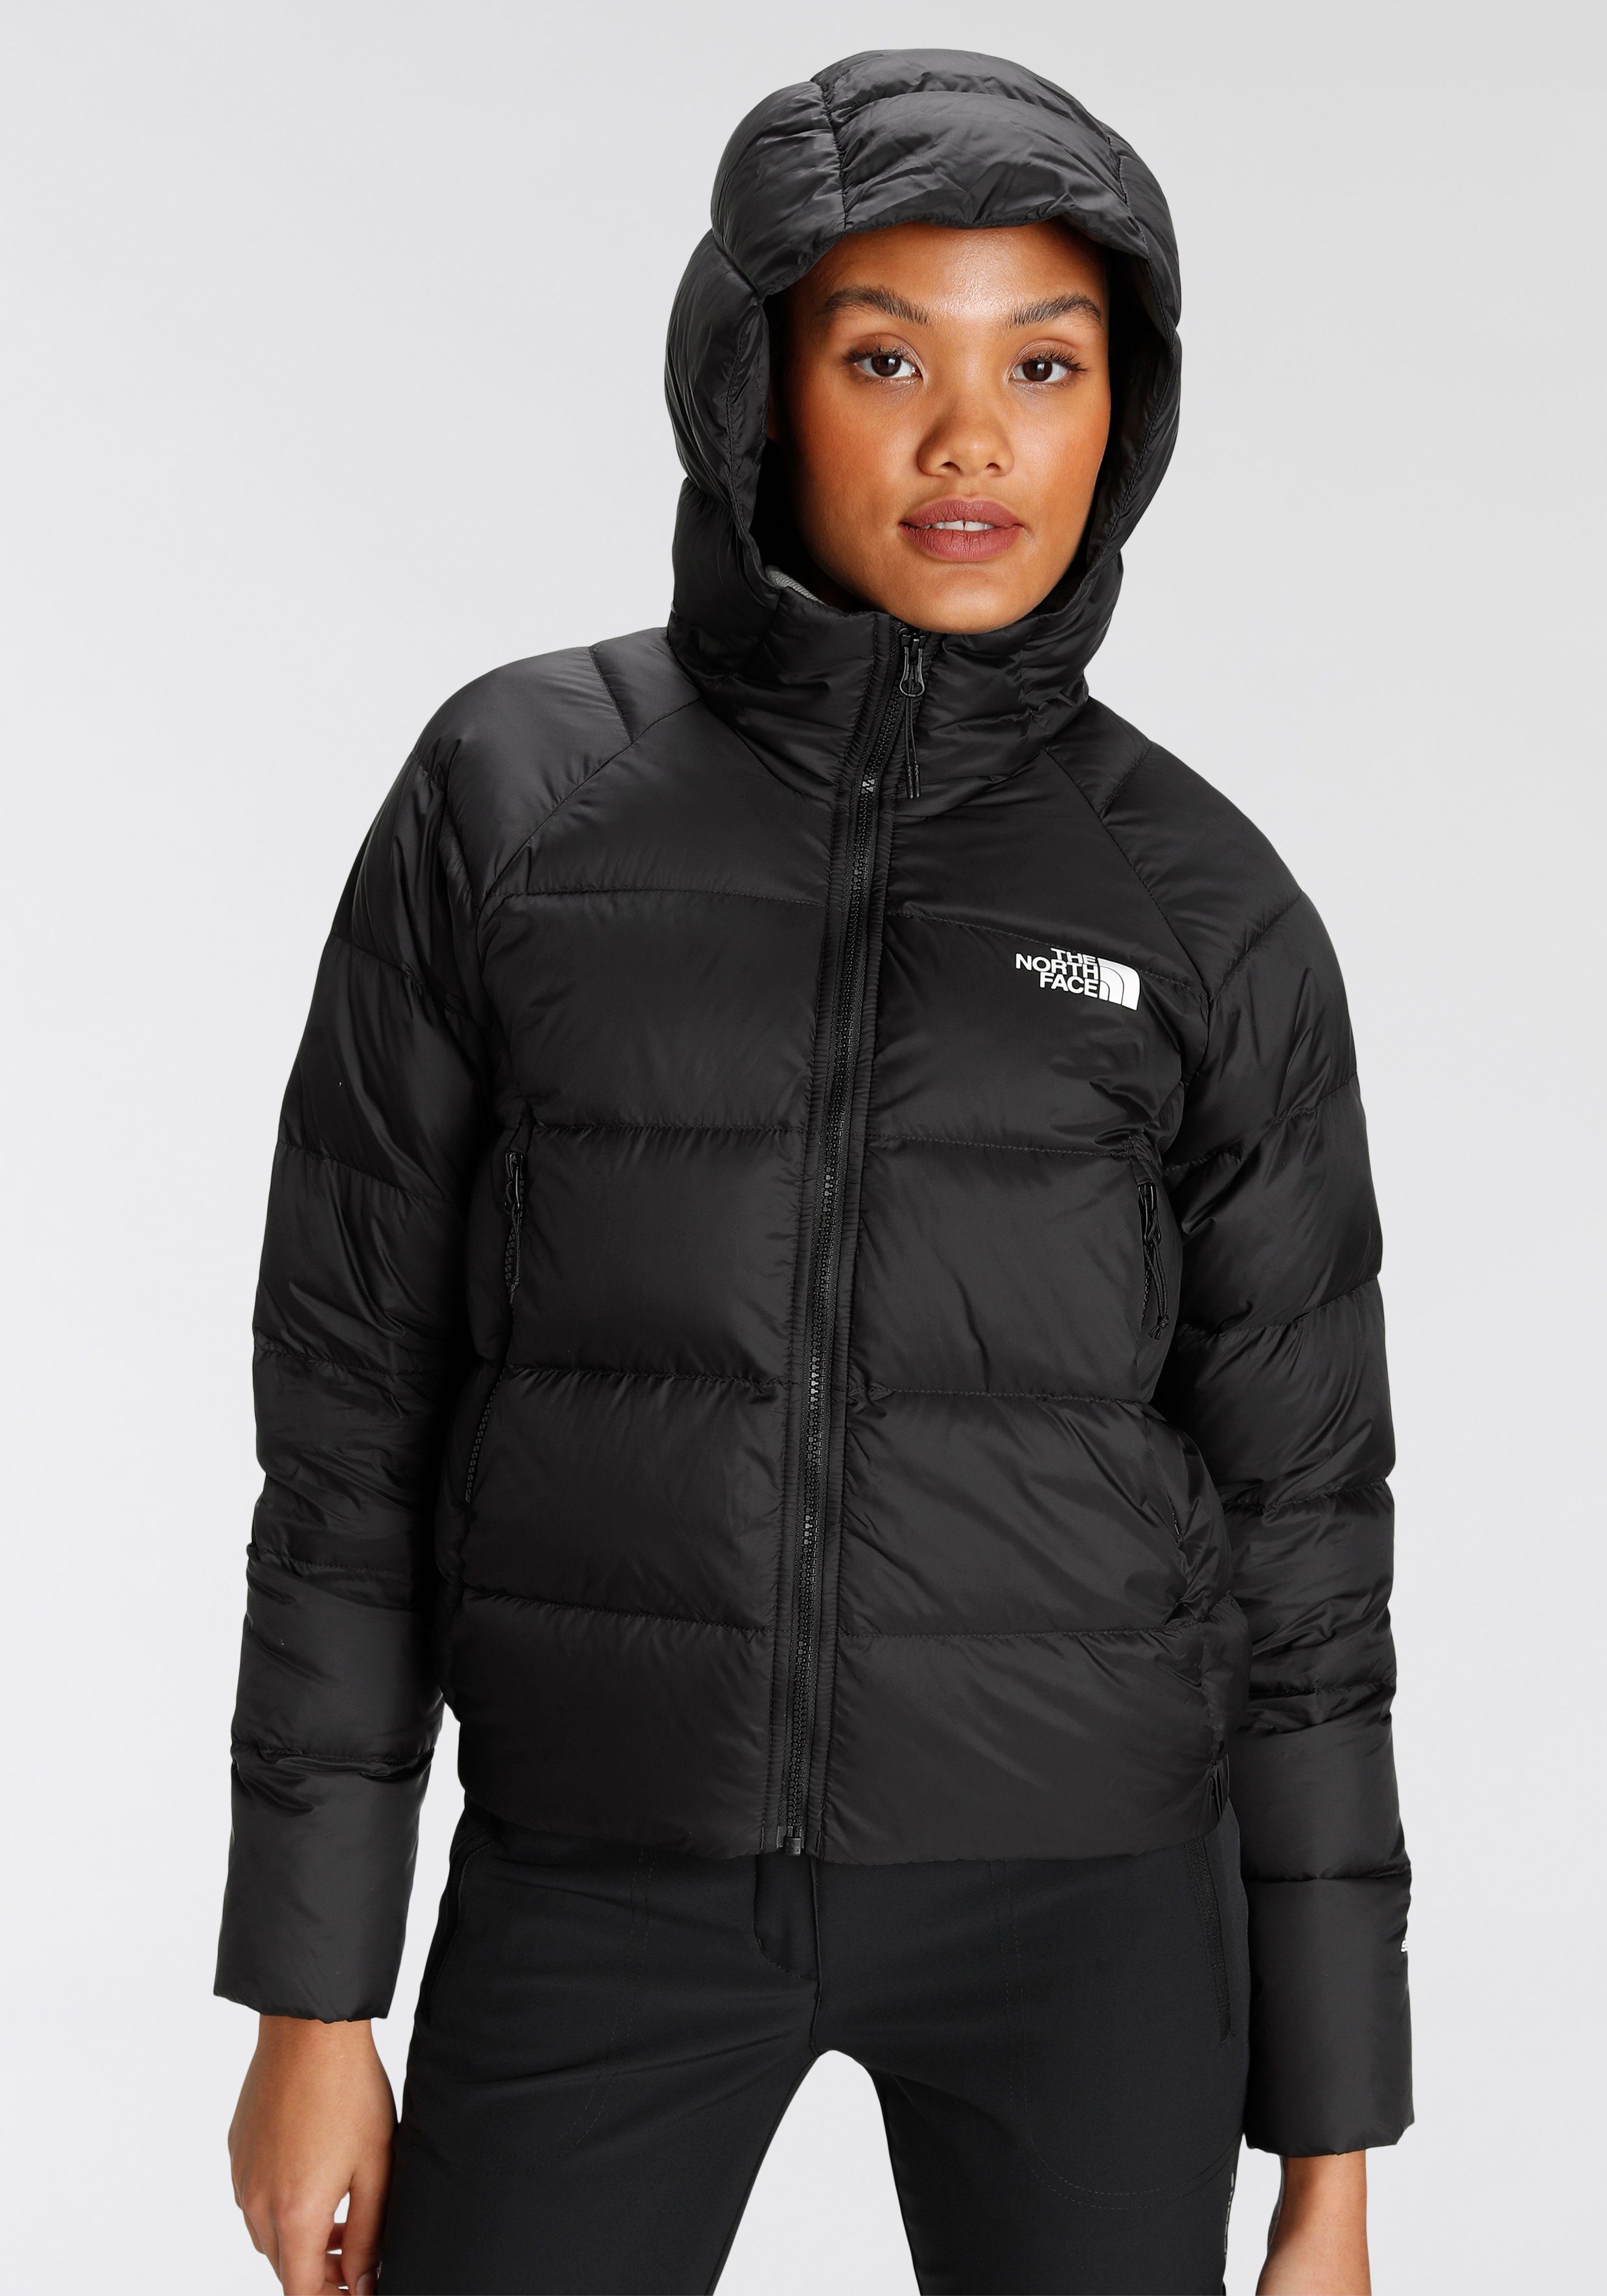 Grüne North Face Jacken für Damen online kaufen | OTTO